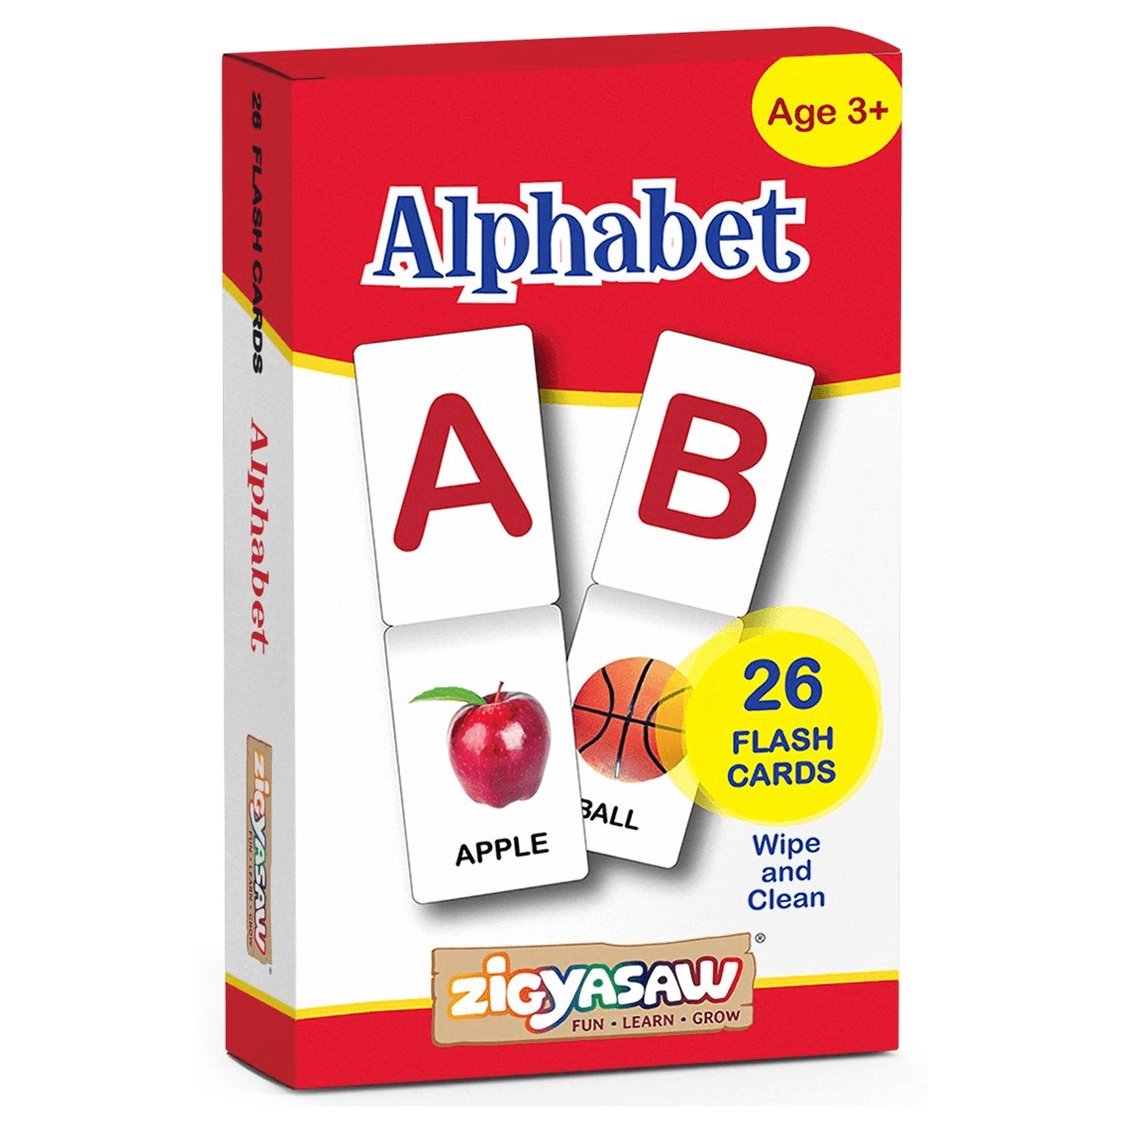 Zigyasaw English ABC Alphabet educational flash cards freeshipping - Zigyasaw